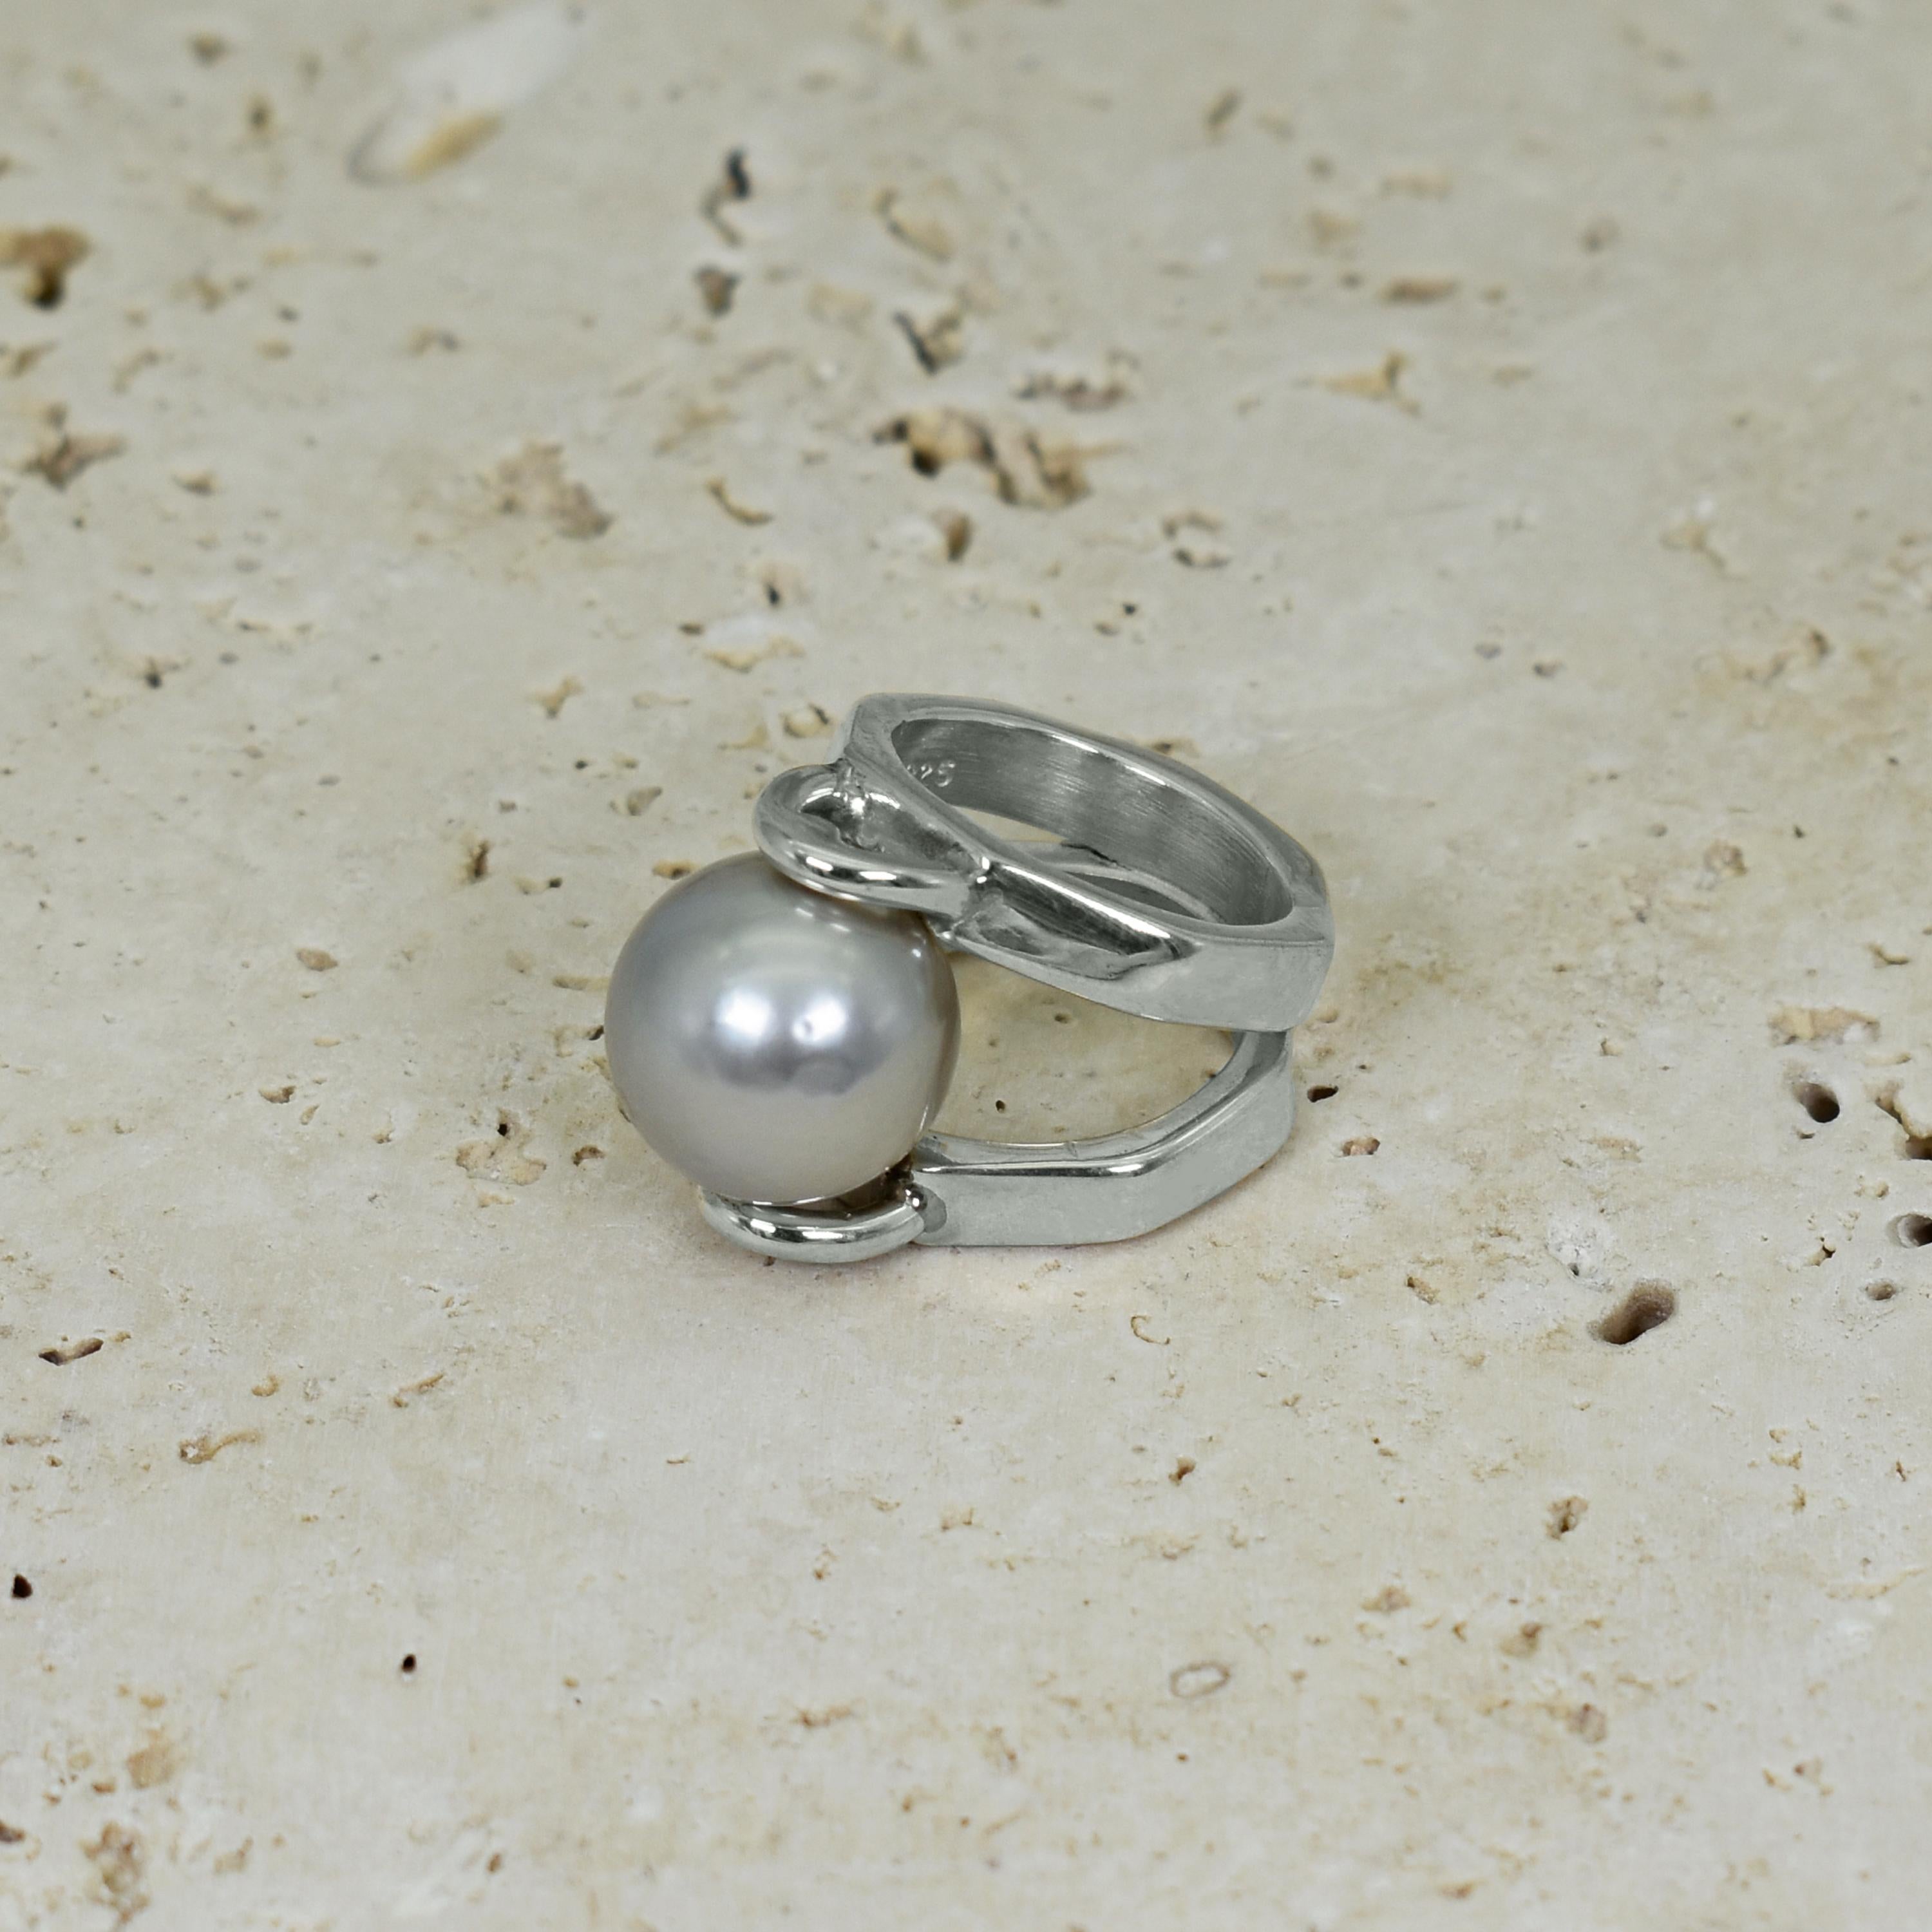 Perle gris tourterelle de 14 mm sertie dans une bague de cocktail en argent sterling de forme octogonale à tige fendue. La bague est de taille 5.75. Bague unique et contemporaine avec une magnifique perle grise.